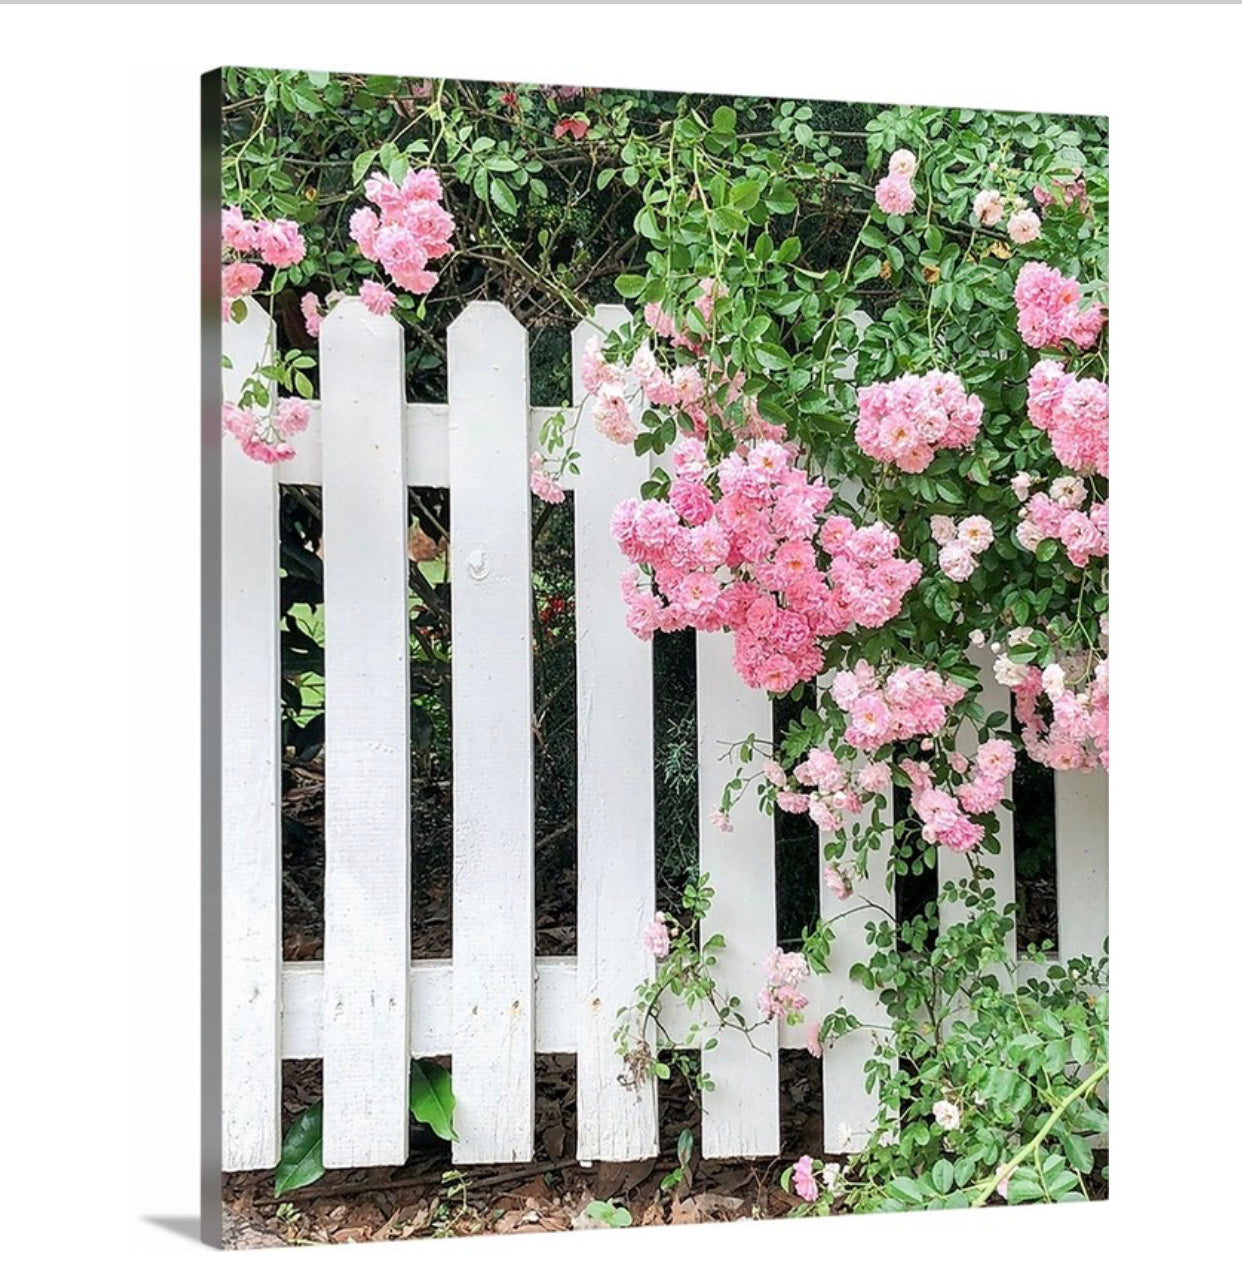 Galerieverpackte Leinwand mit weißem Lattenzaun und rosa Rosen